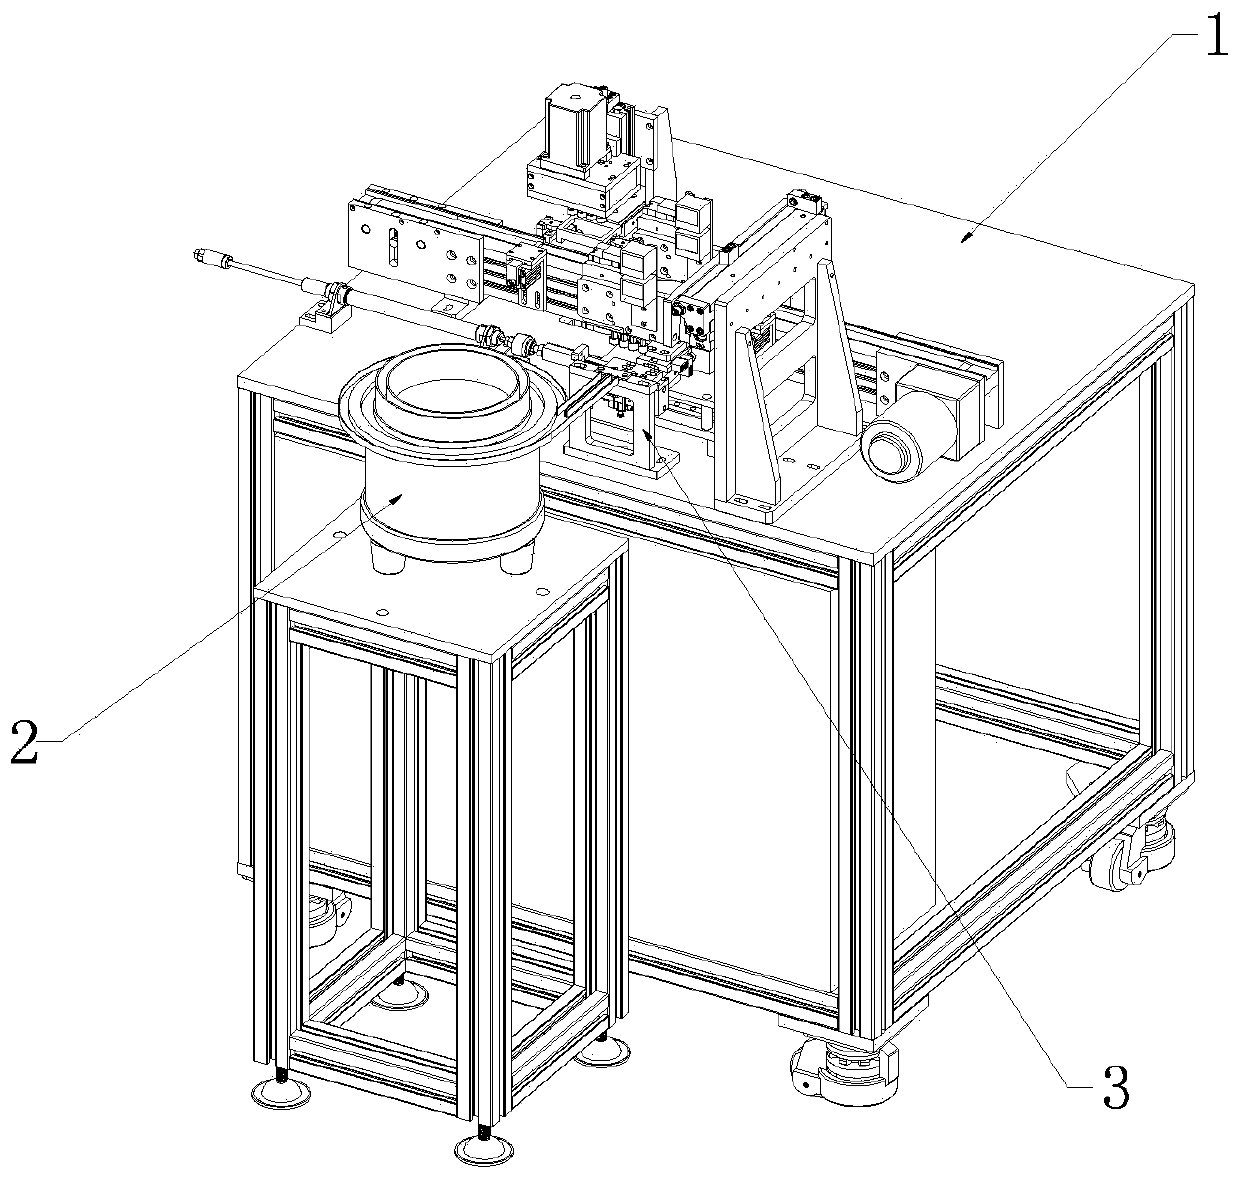 Upper shell assembling machine